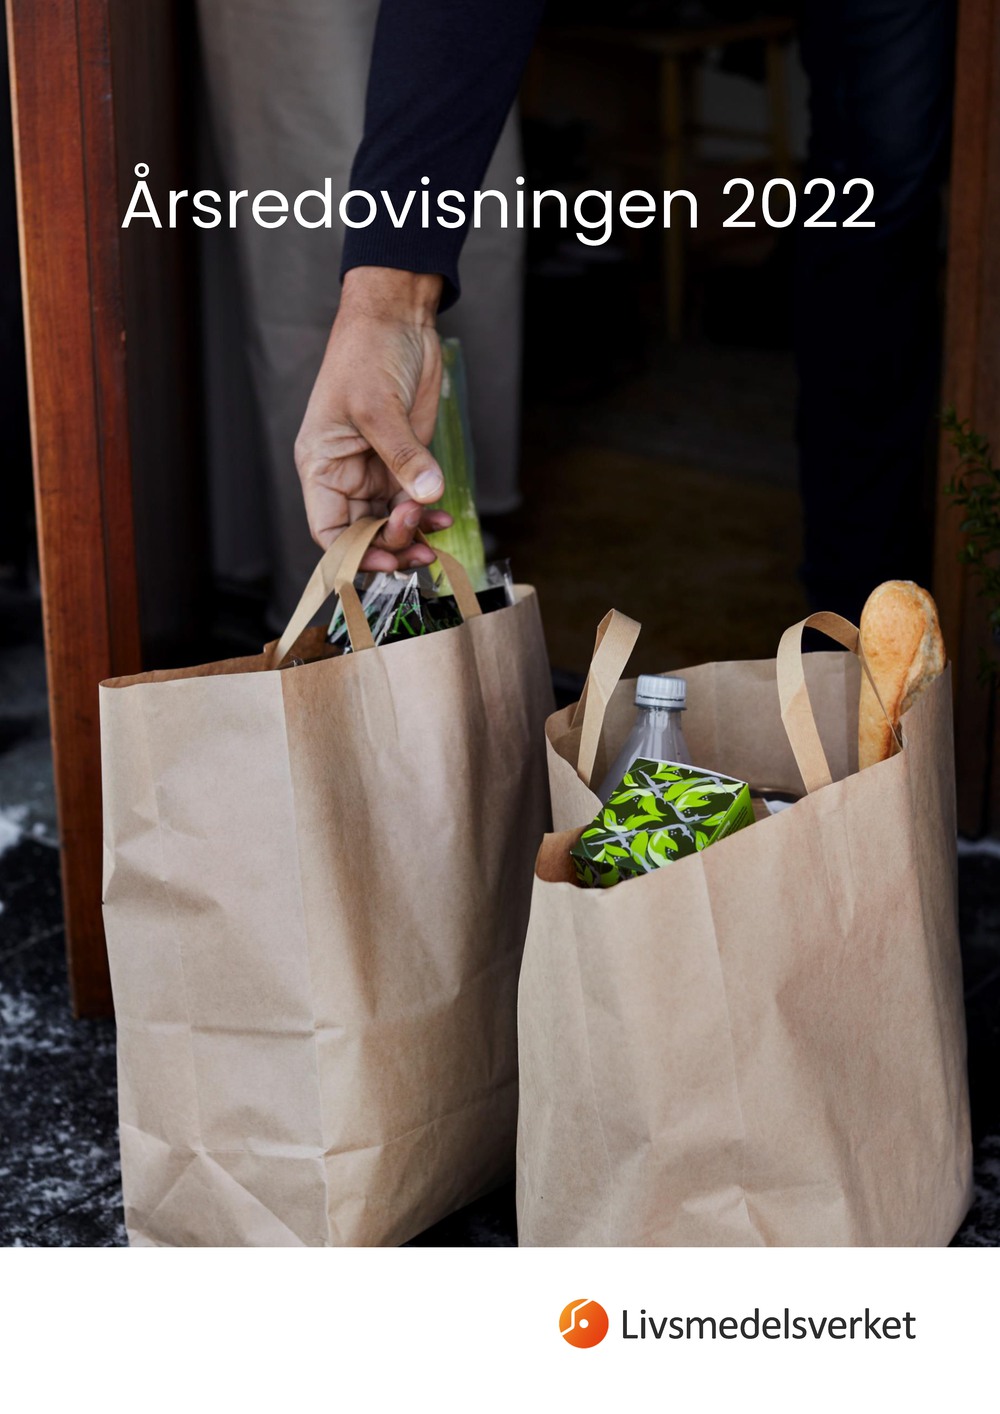 Framsidan av Livsmedelsverkets årsredovisning 2022 med en bild på två matkassar.